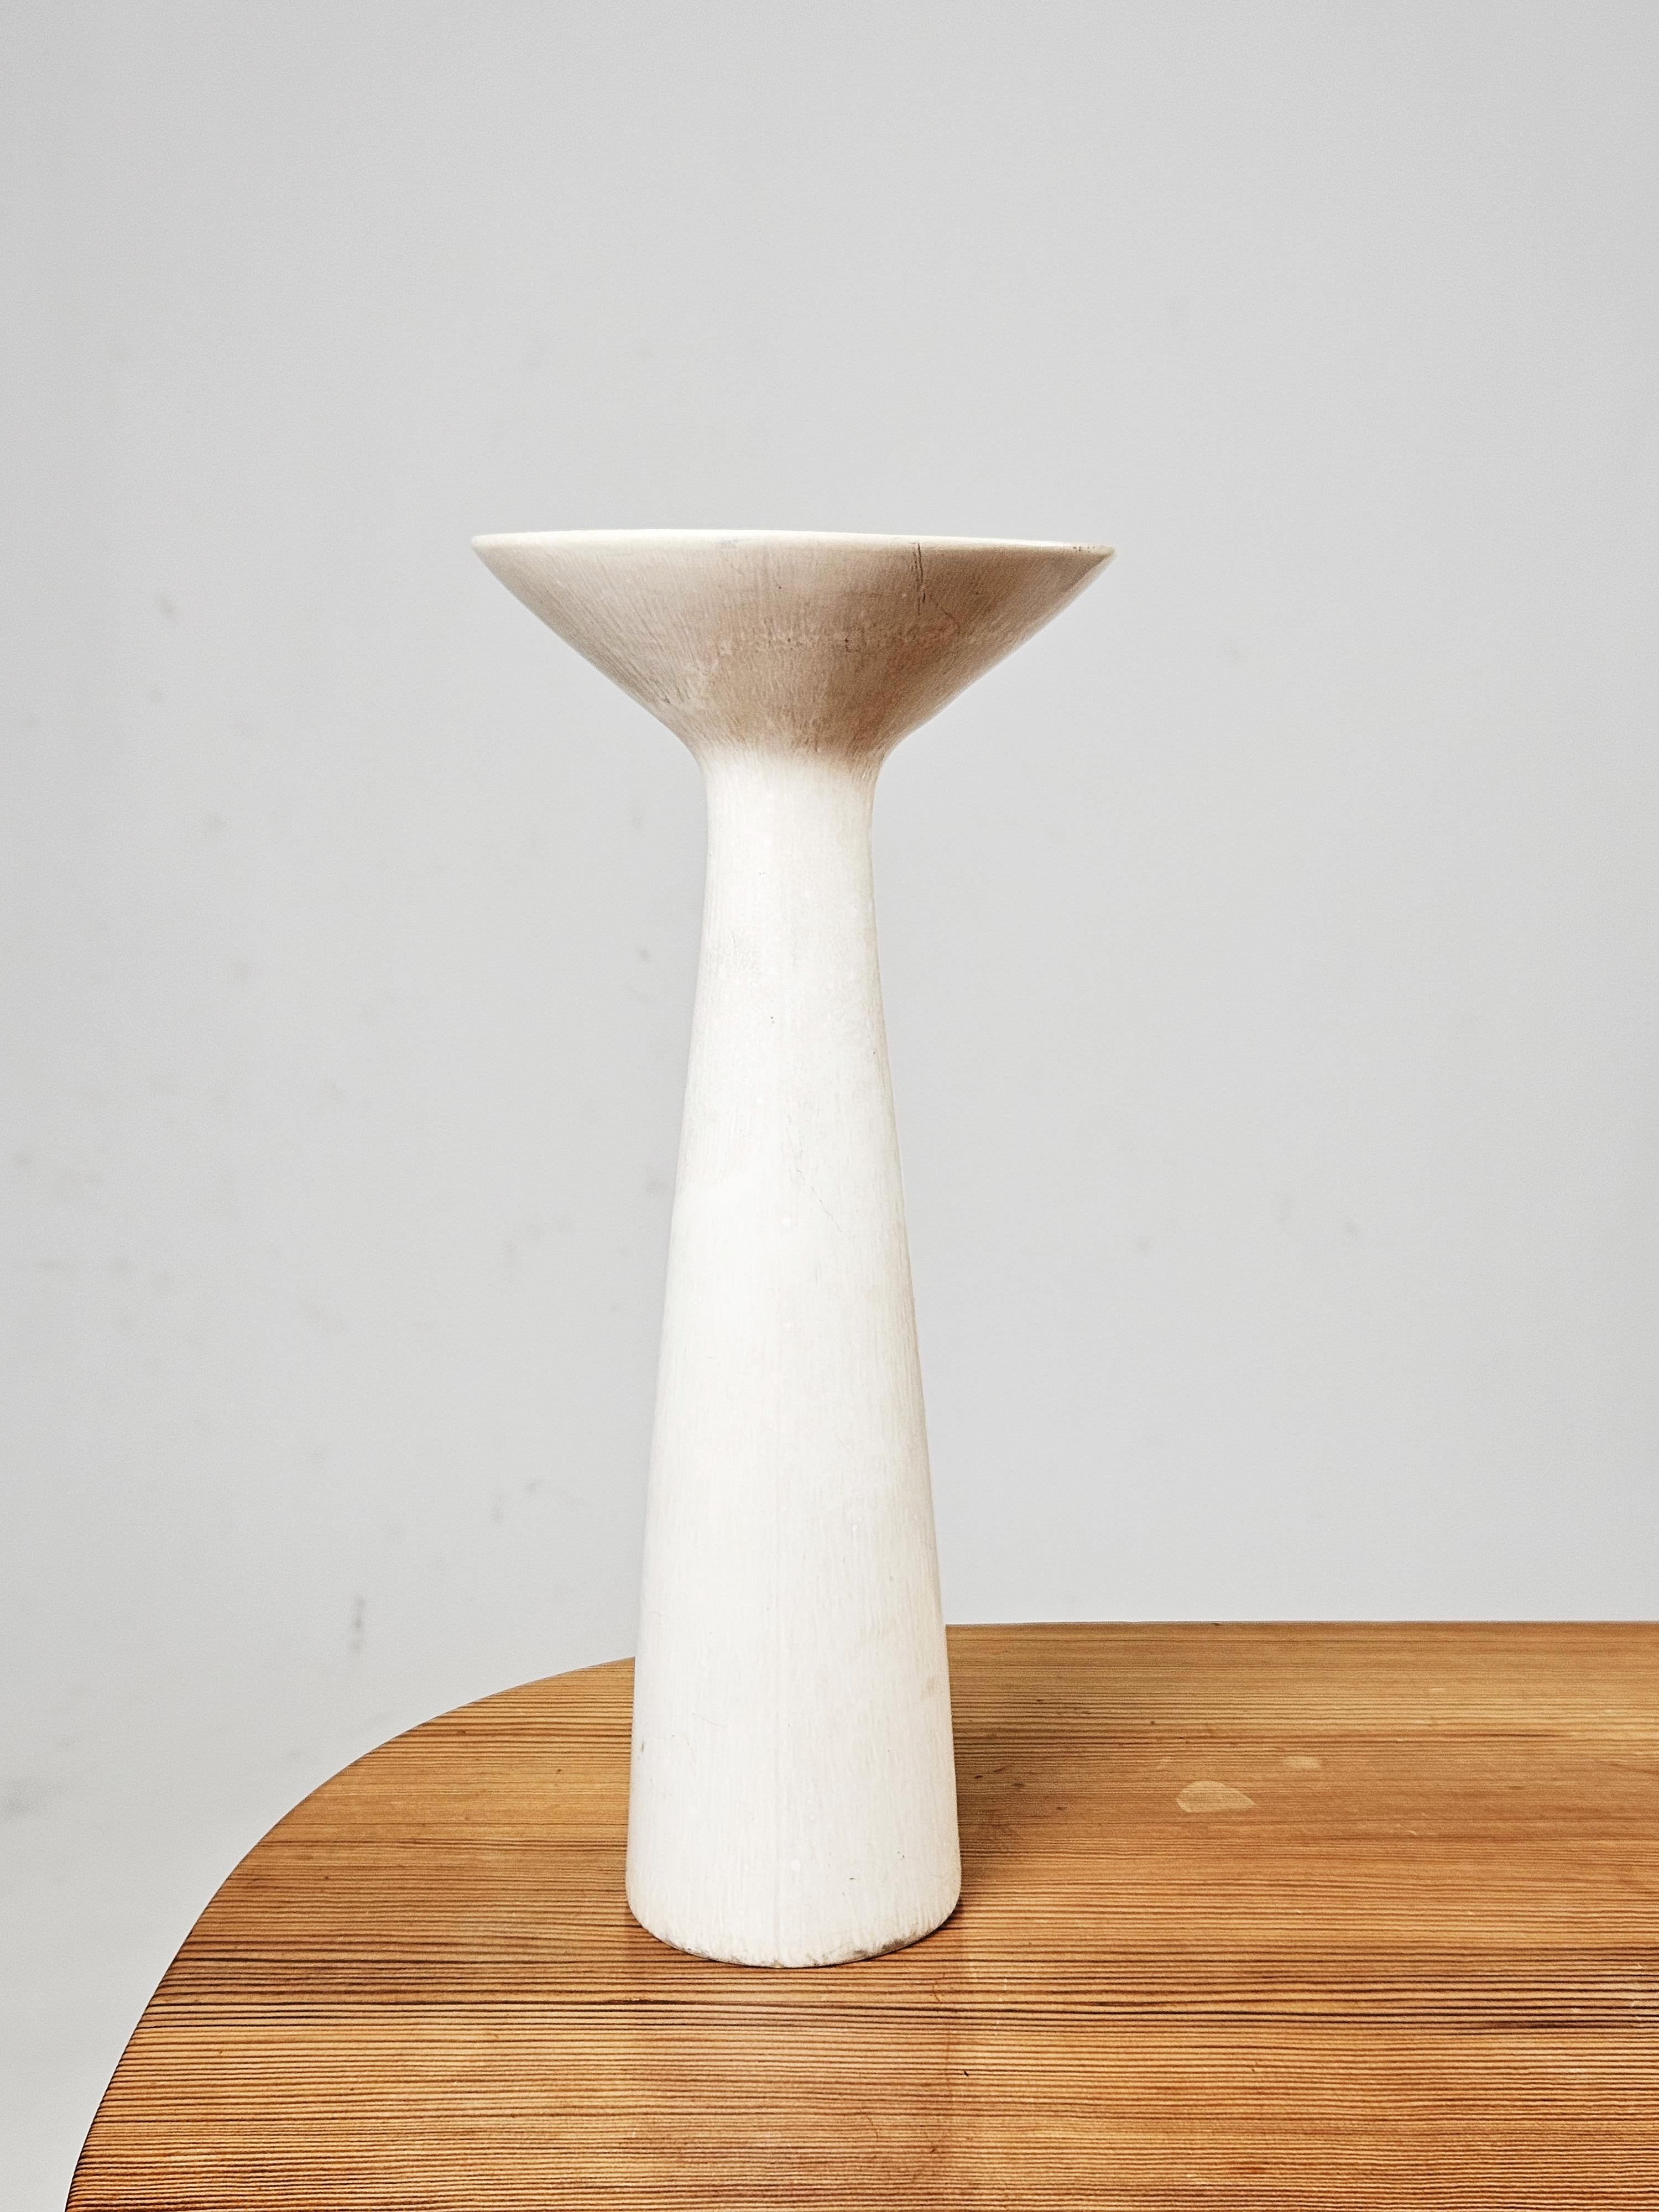 Schöne Vase aus weißem Steingut, entworfen von Carl-Harry Stålhane für Rörstrand, Schweden, 1960er Jahre. 

Passt perfekt zu anderen Scandinavian Modern Produkten aus dieser Zeit. 

Seltenes Modell mit begehrter weißer Glasur.

Einige minimale